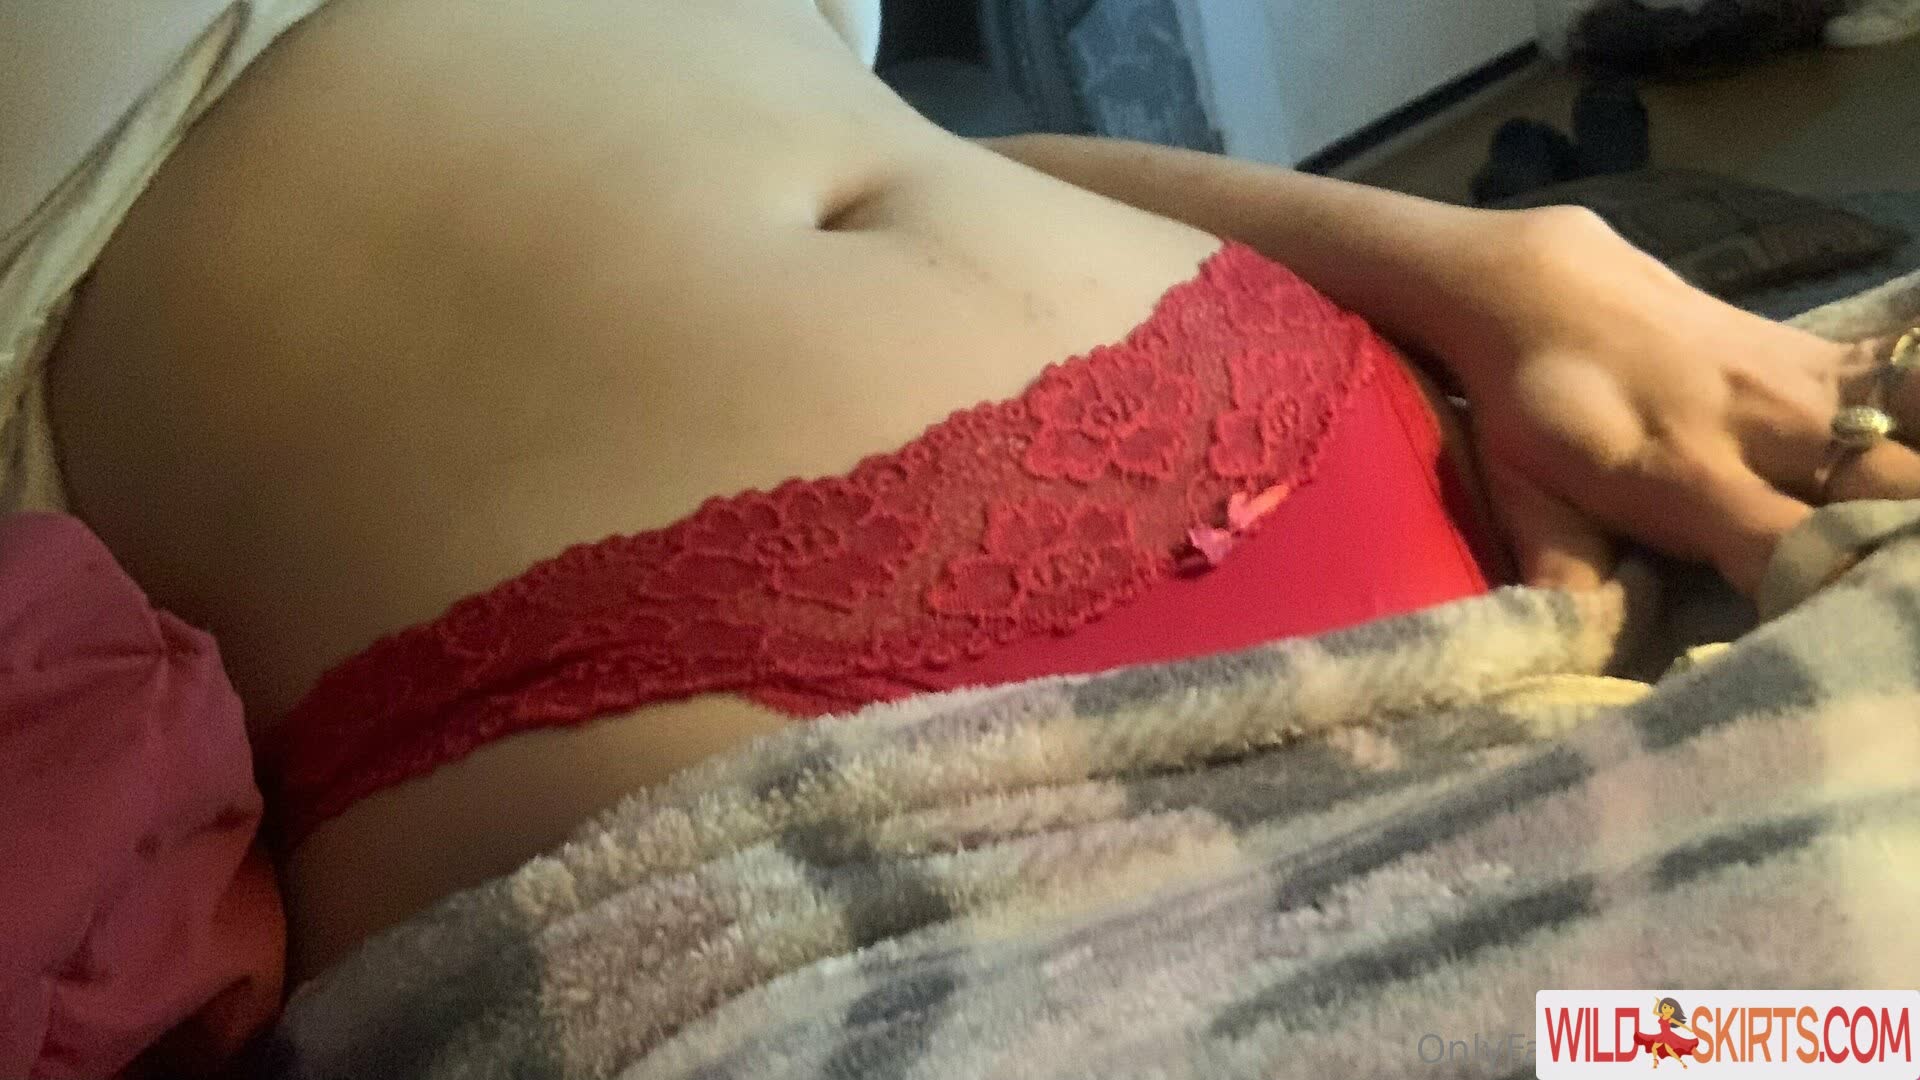 kashabaee / Billie Bryson / kashabae9 / kashabaee nude OnlyFans, Instagram leaked photo #75